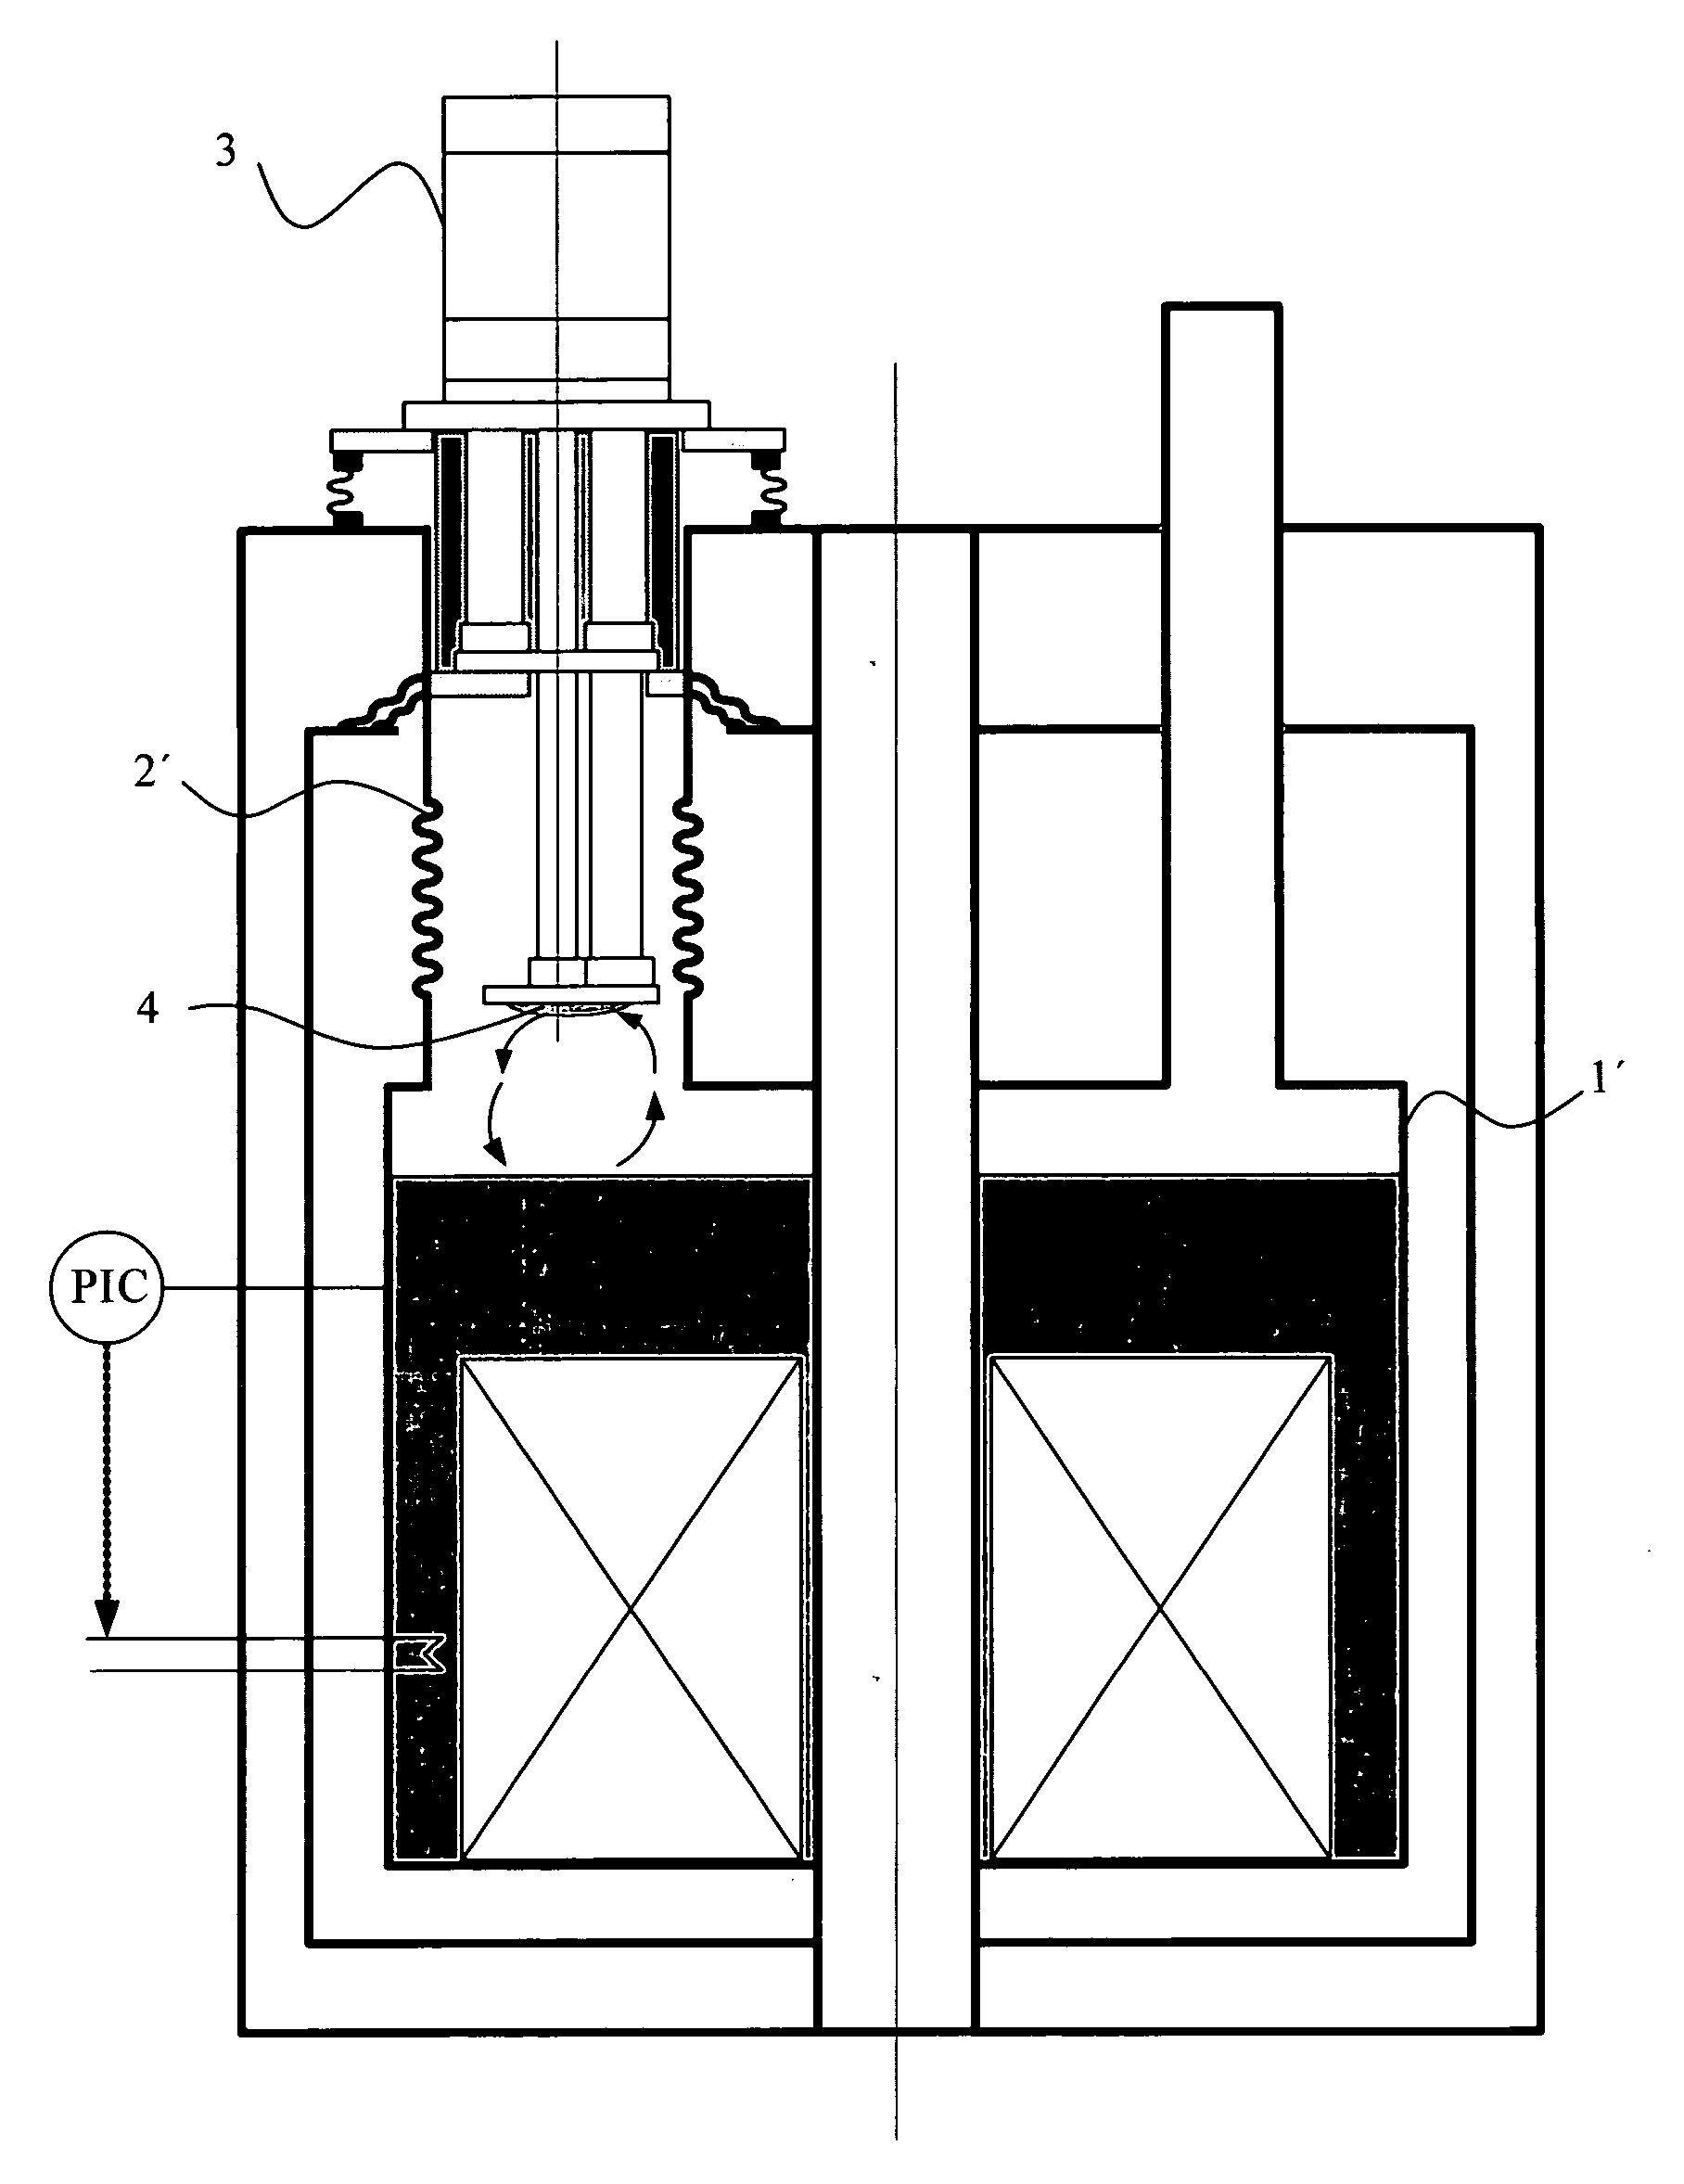 Cryostat configuration with cryocooler